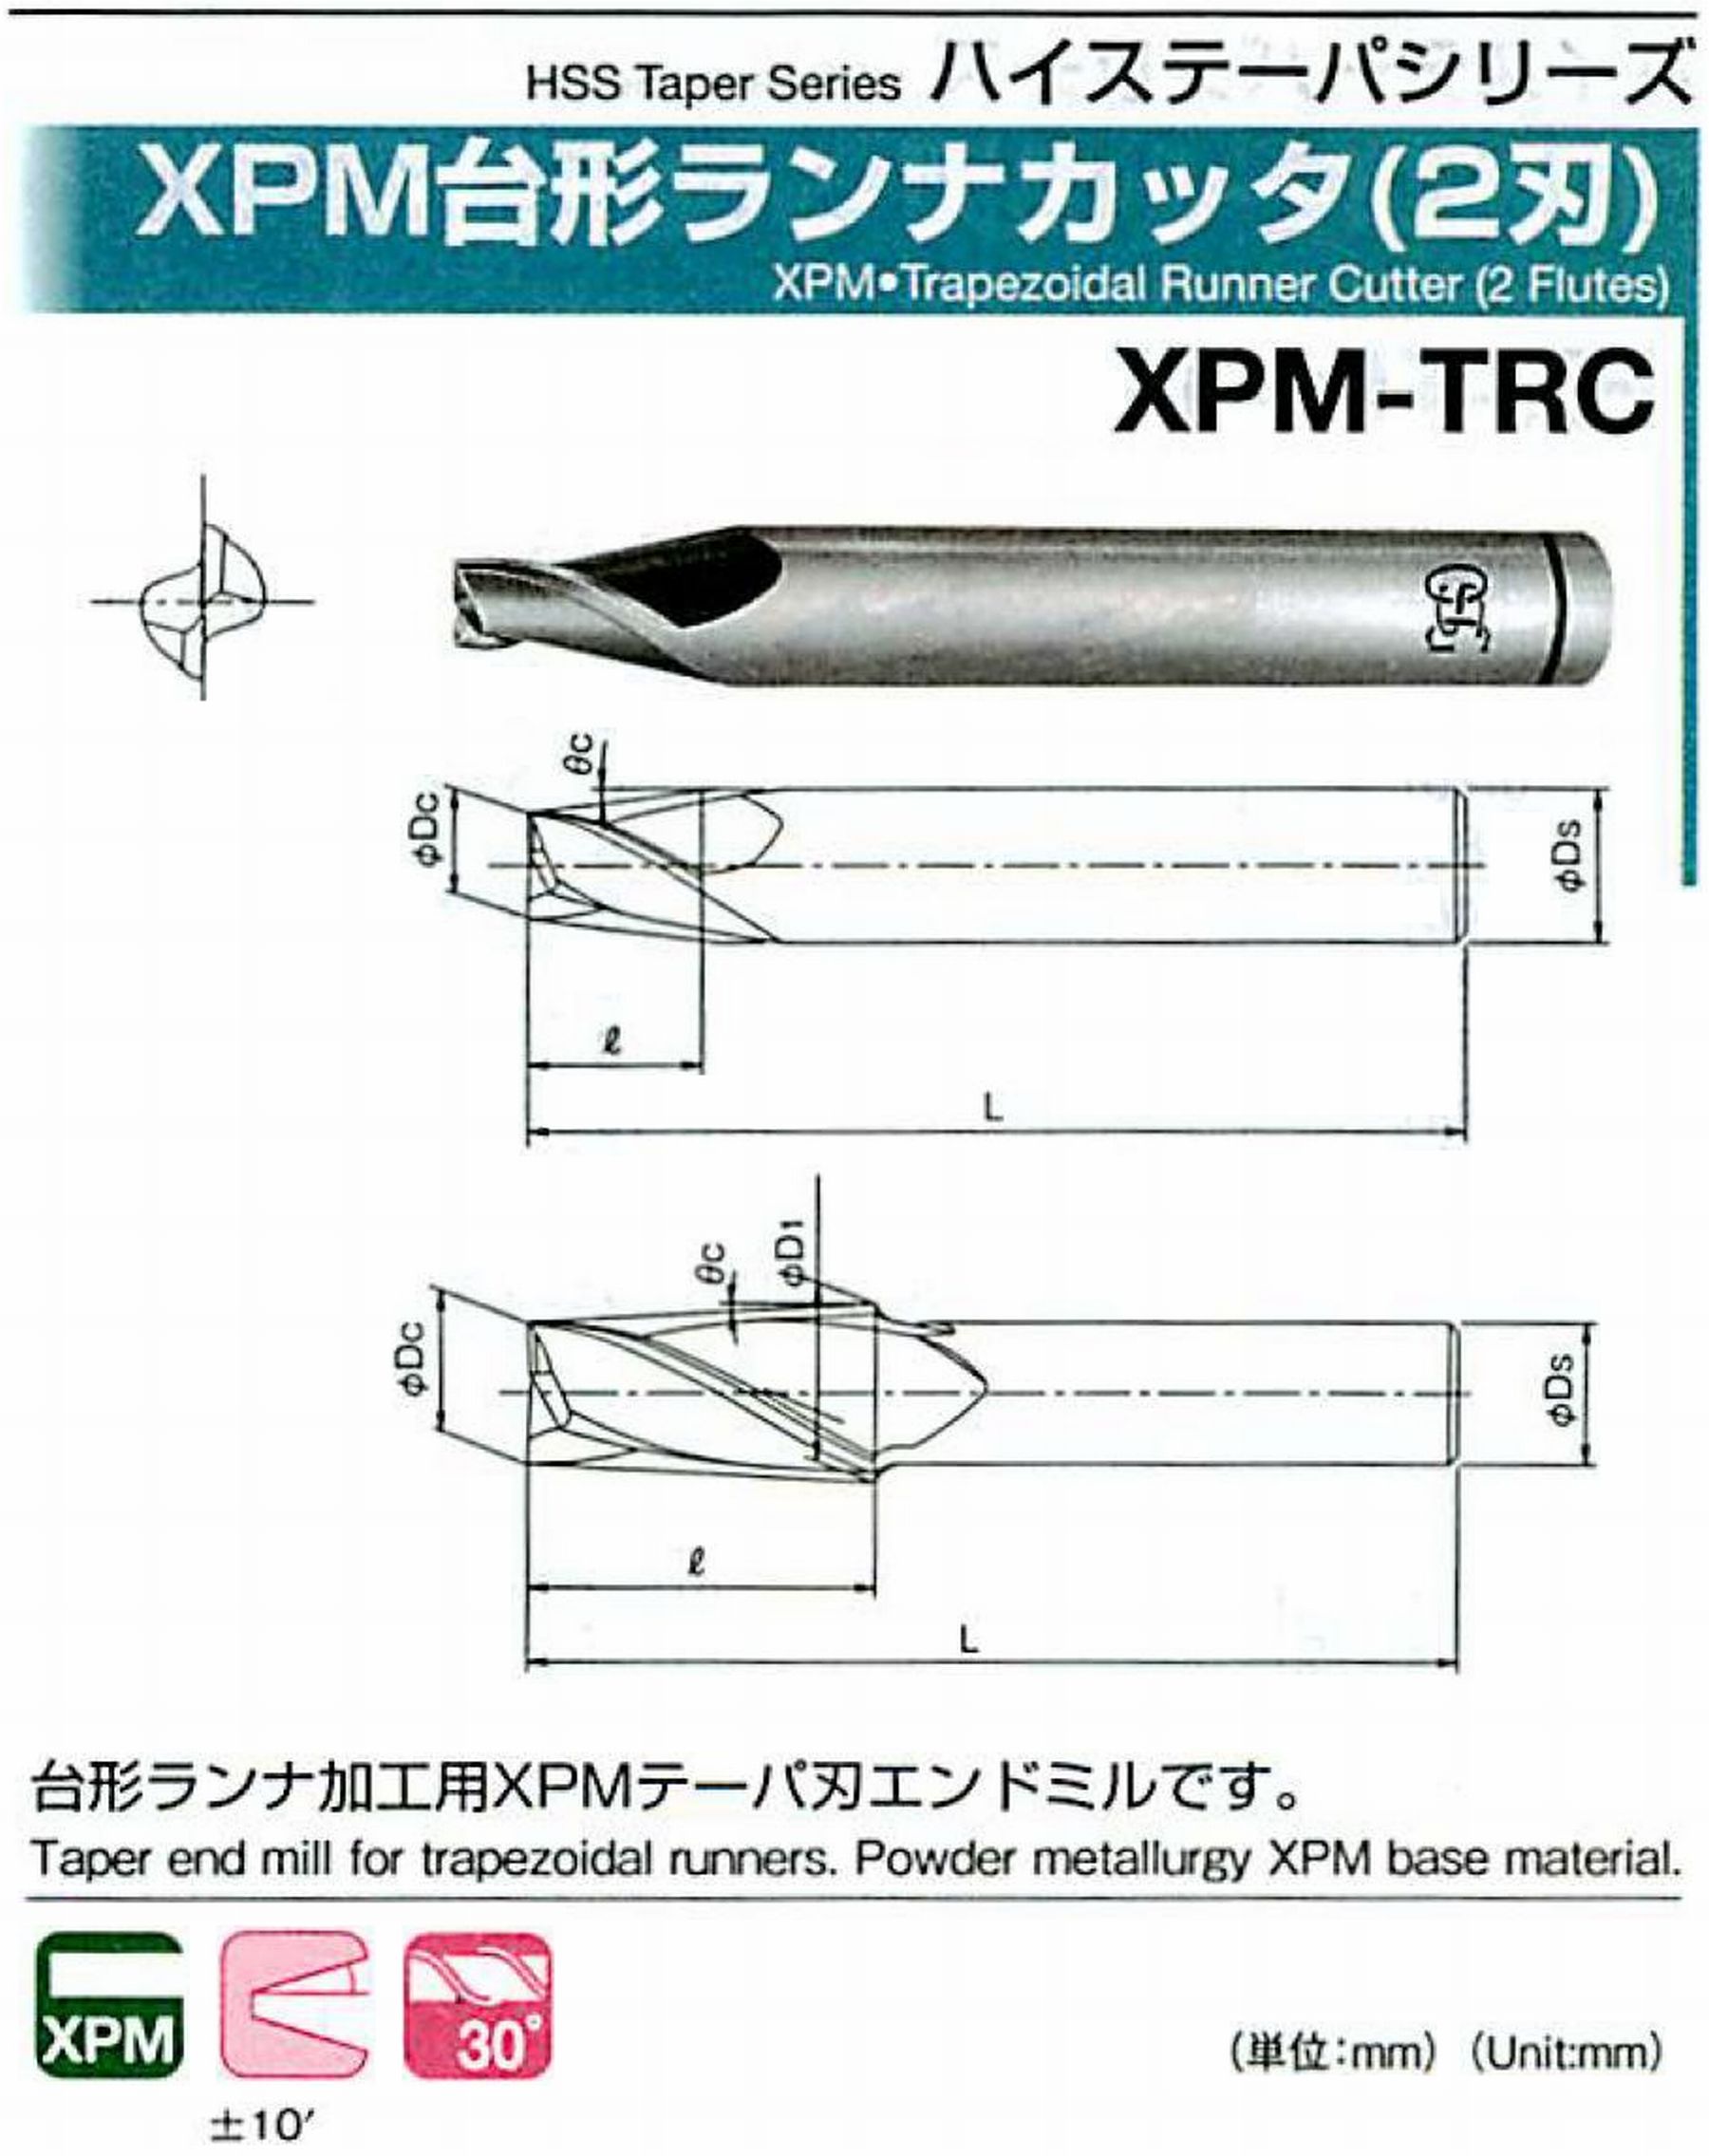 オーエスジー/OSG XPM台形ランナカッタ(2刃) XPM-TRC 外径×刃部テーパ半角2.5×10° 全長50 刃長5 シャンク径6mm